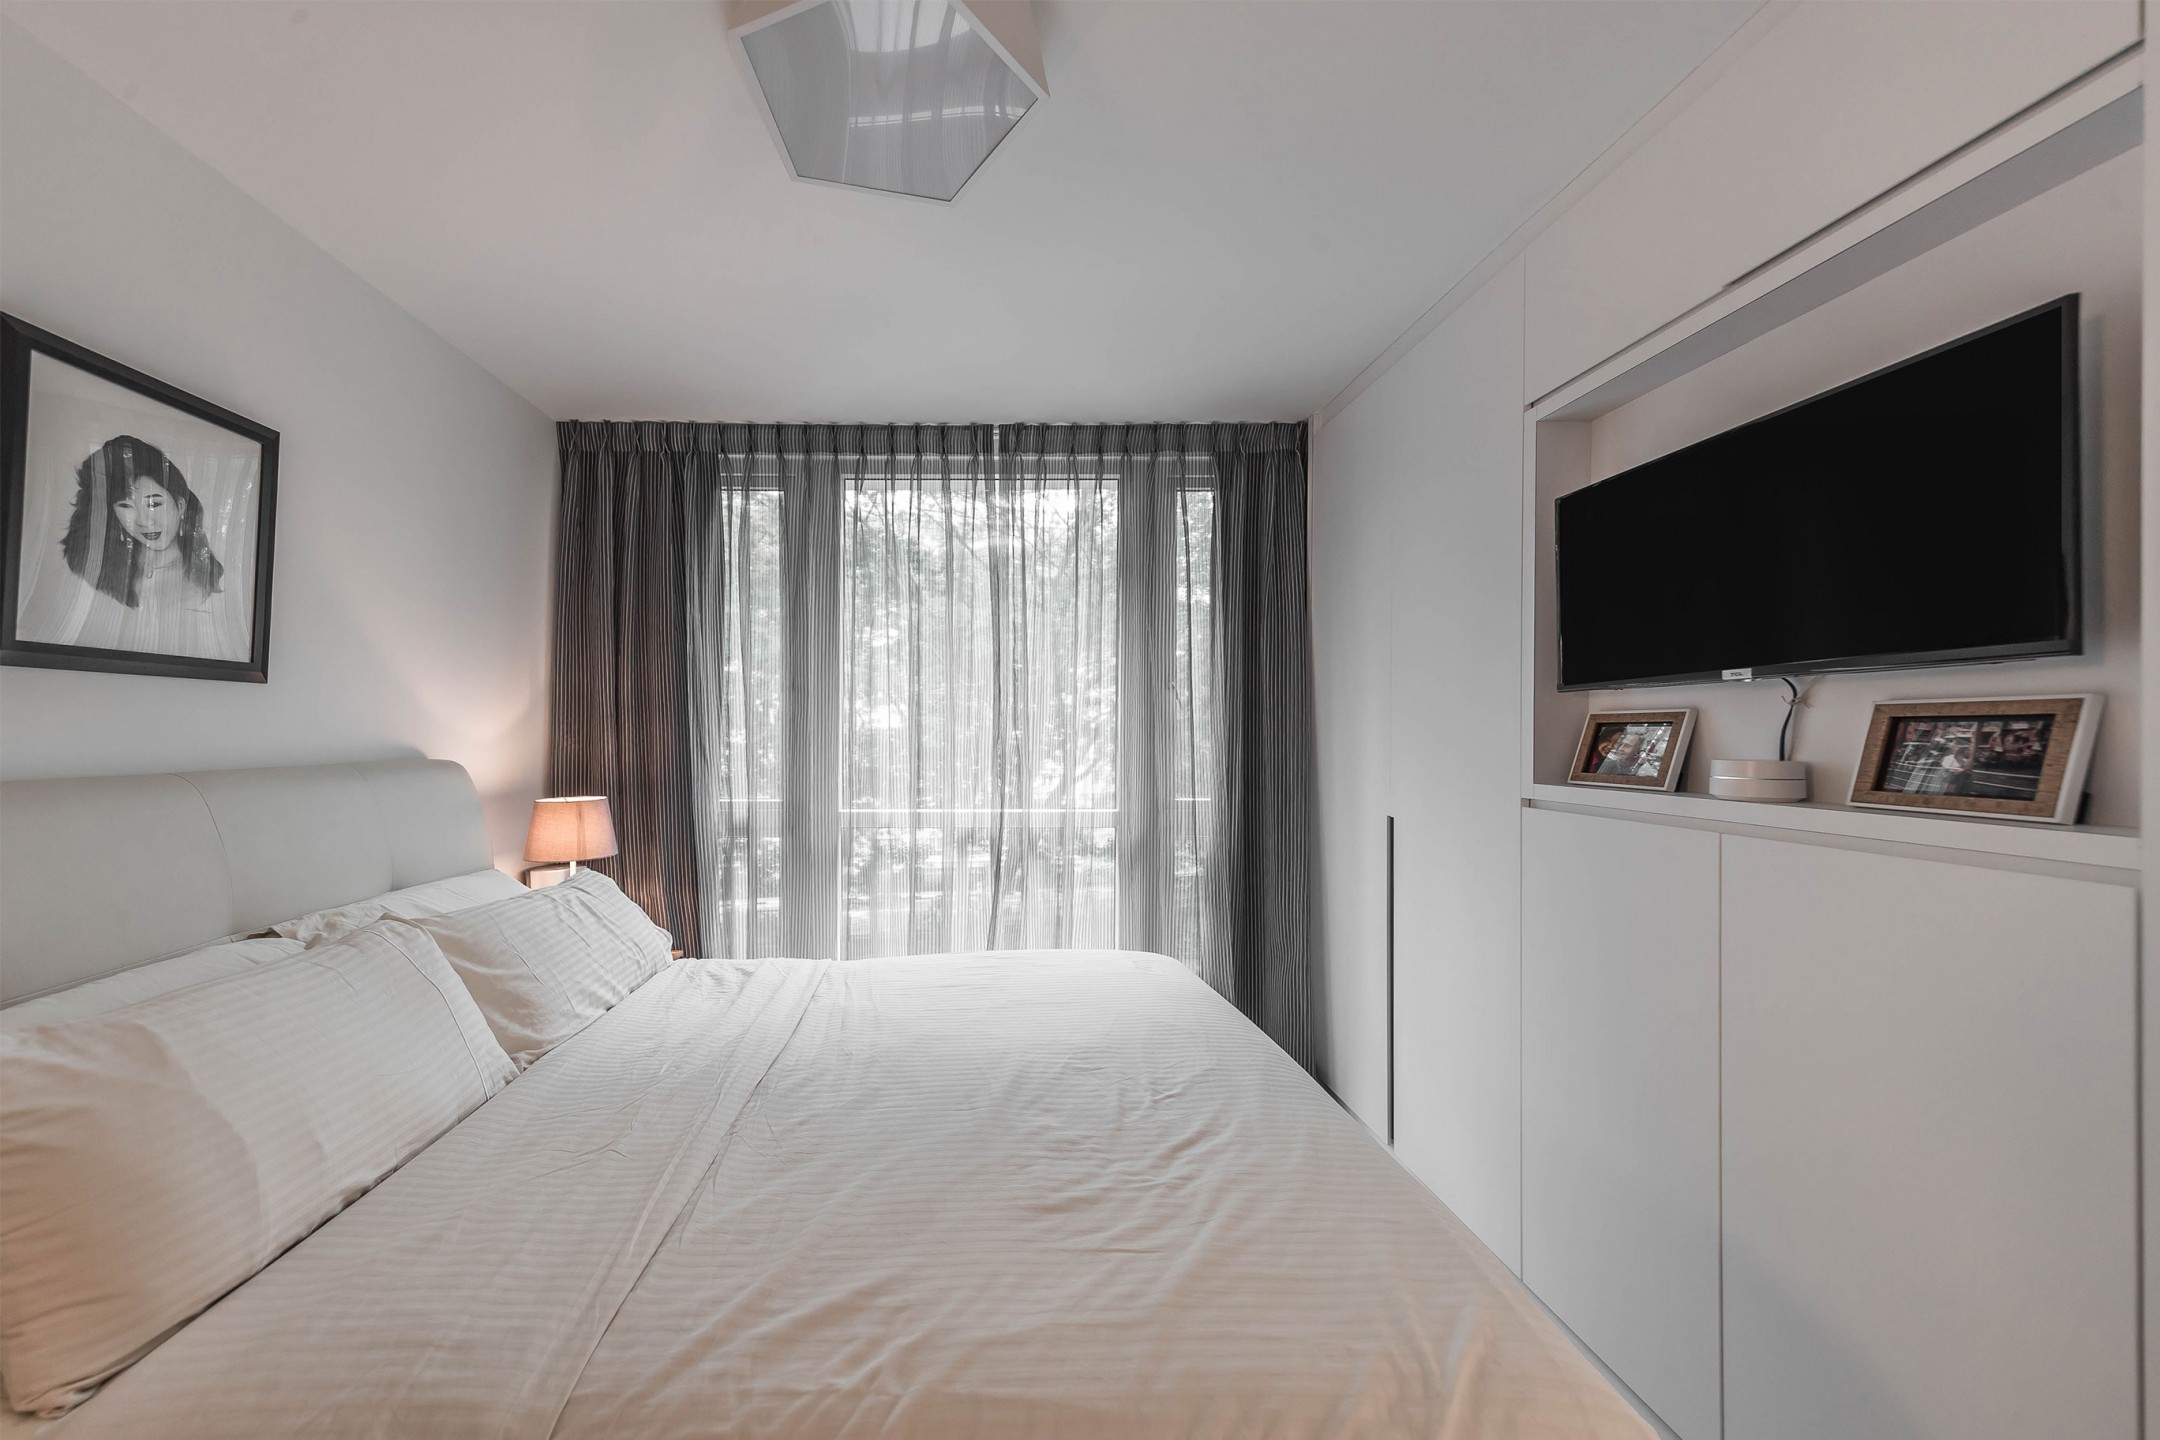 squarerooms renozone condo condominium renovation home interior design bedroom minimalist white